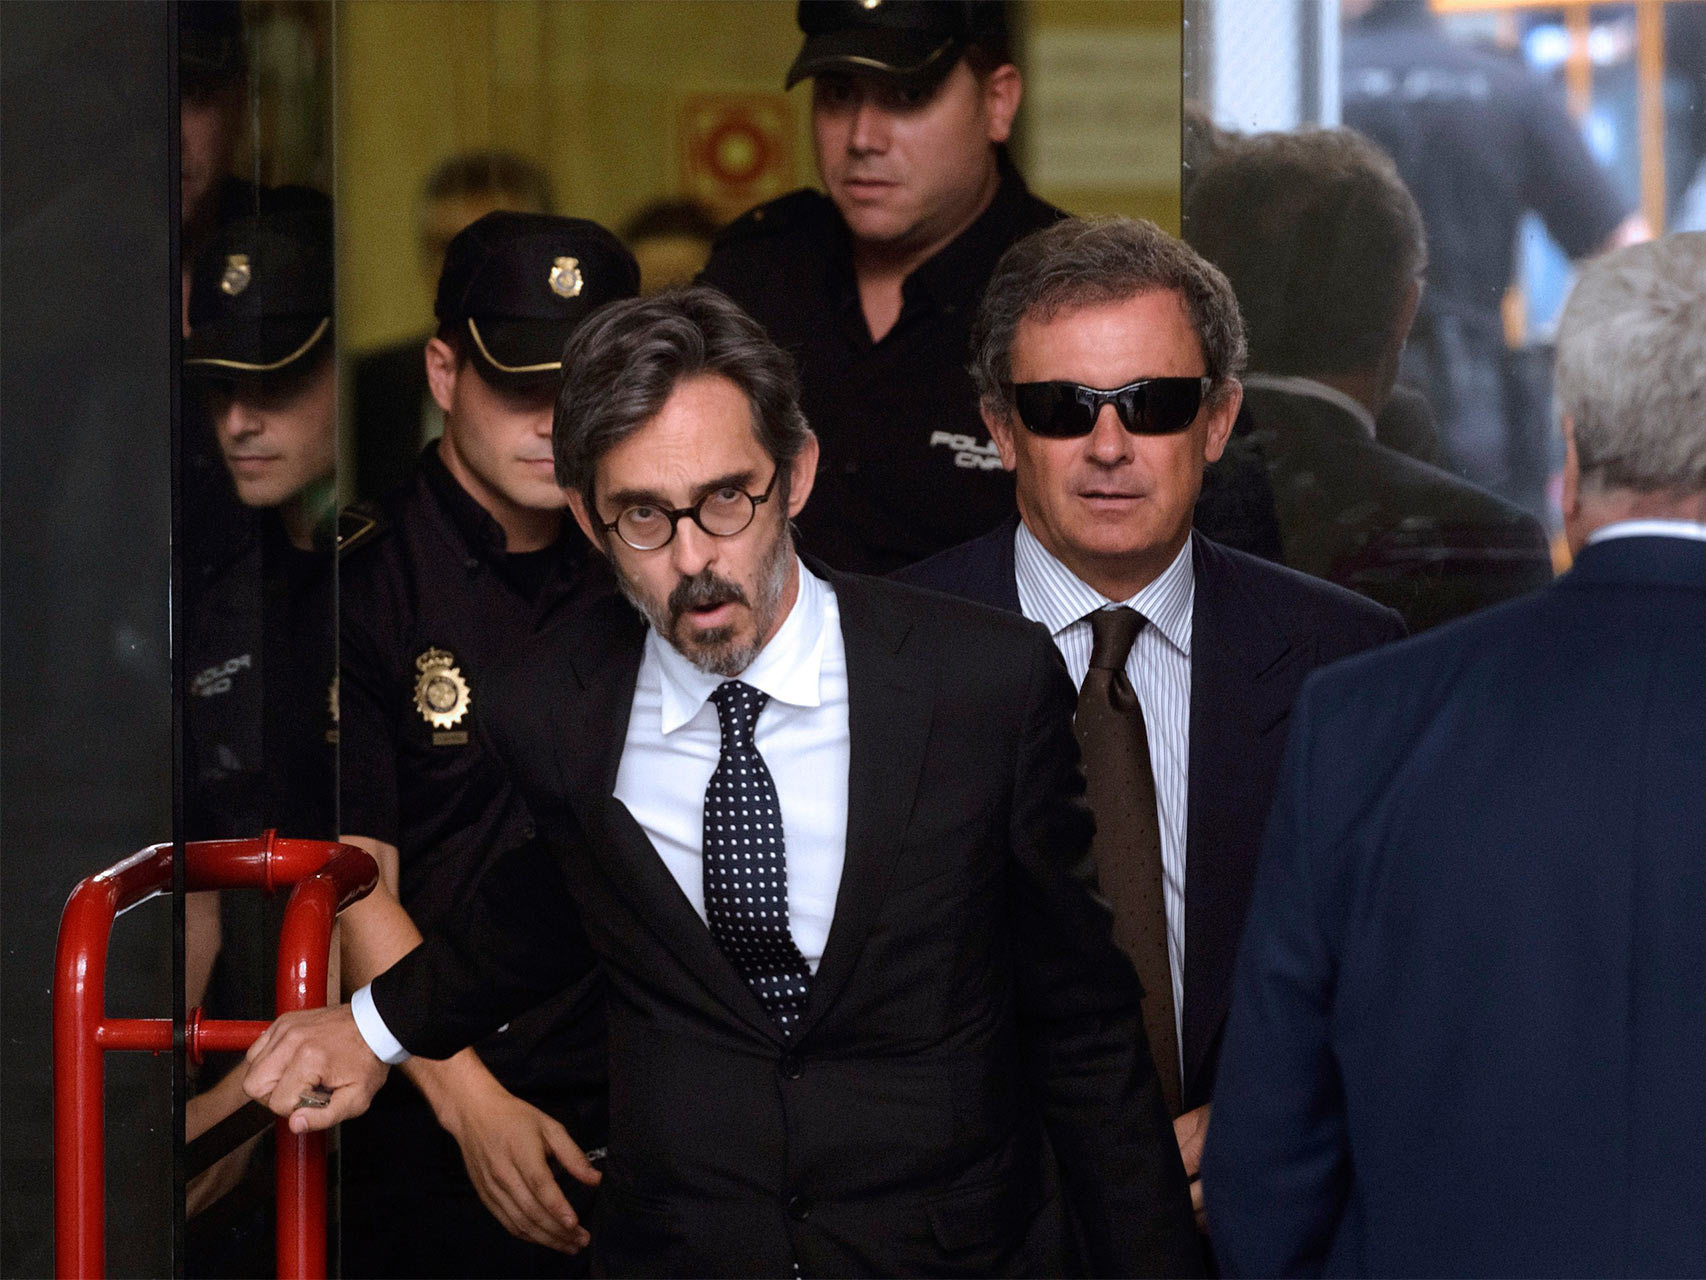 Jordi Pujol Ferrusola y su abogado, Cristobal Martell, abandonan el juzgado en 2014.